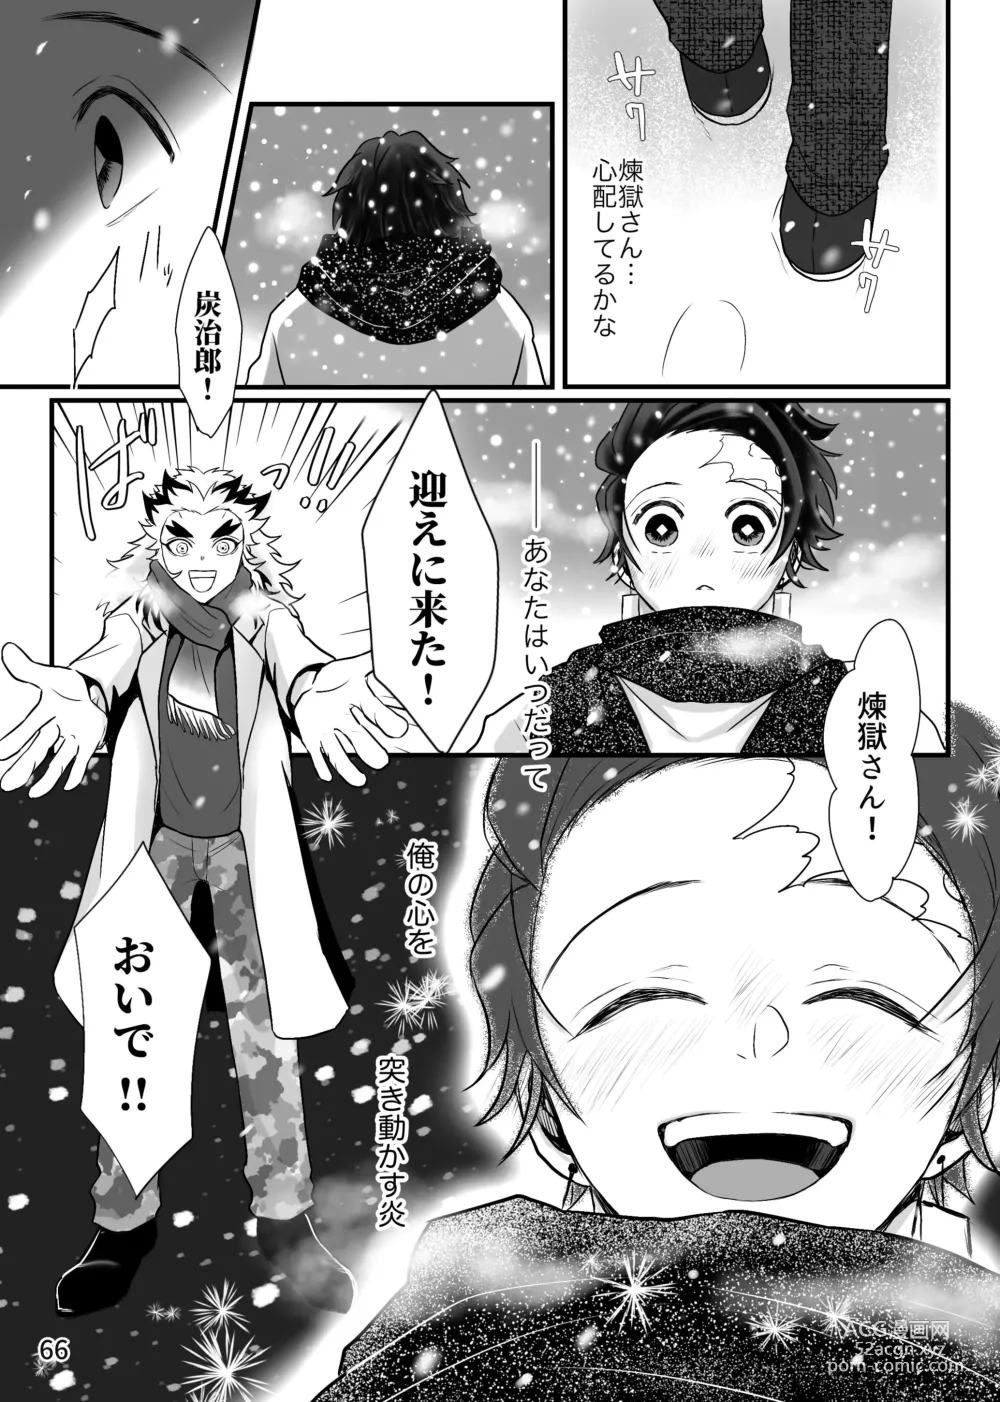 Page 66 of doujinshi Tsuyobi ga Sugiru zo, Shounen!